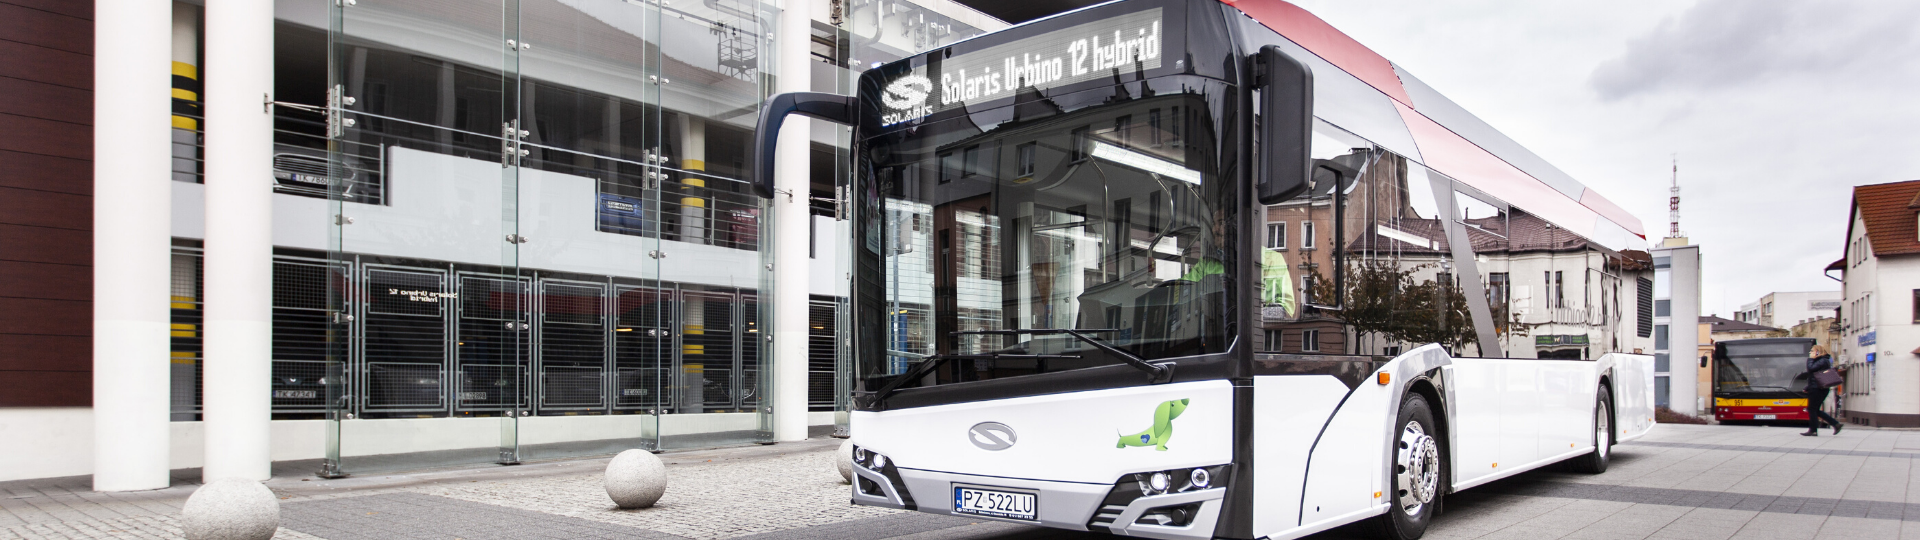 Sieben moderne Hybridbusse von Solaris sollen an Ząbkowice Sląskie geliefert werden